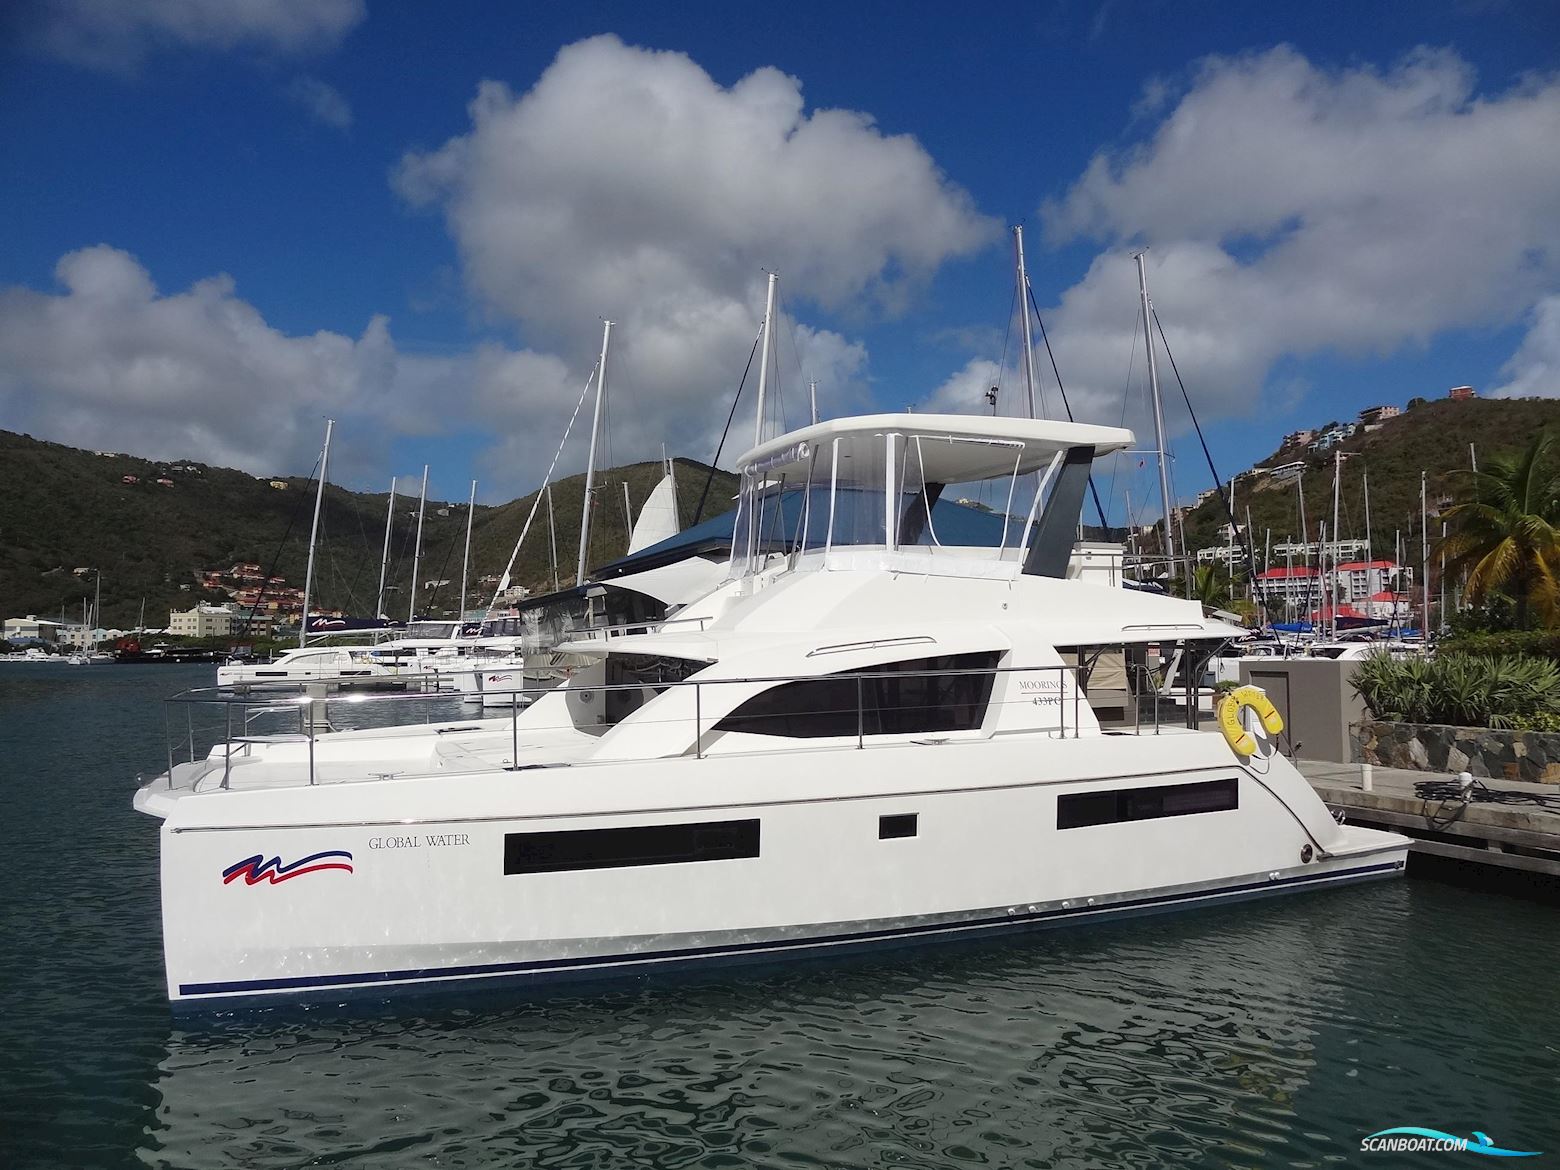 LEOPARD 43 Powercat Motorboot 2018, mit Yanmar motor, Keine Länderinfo